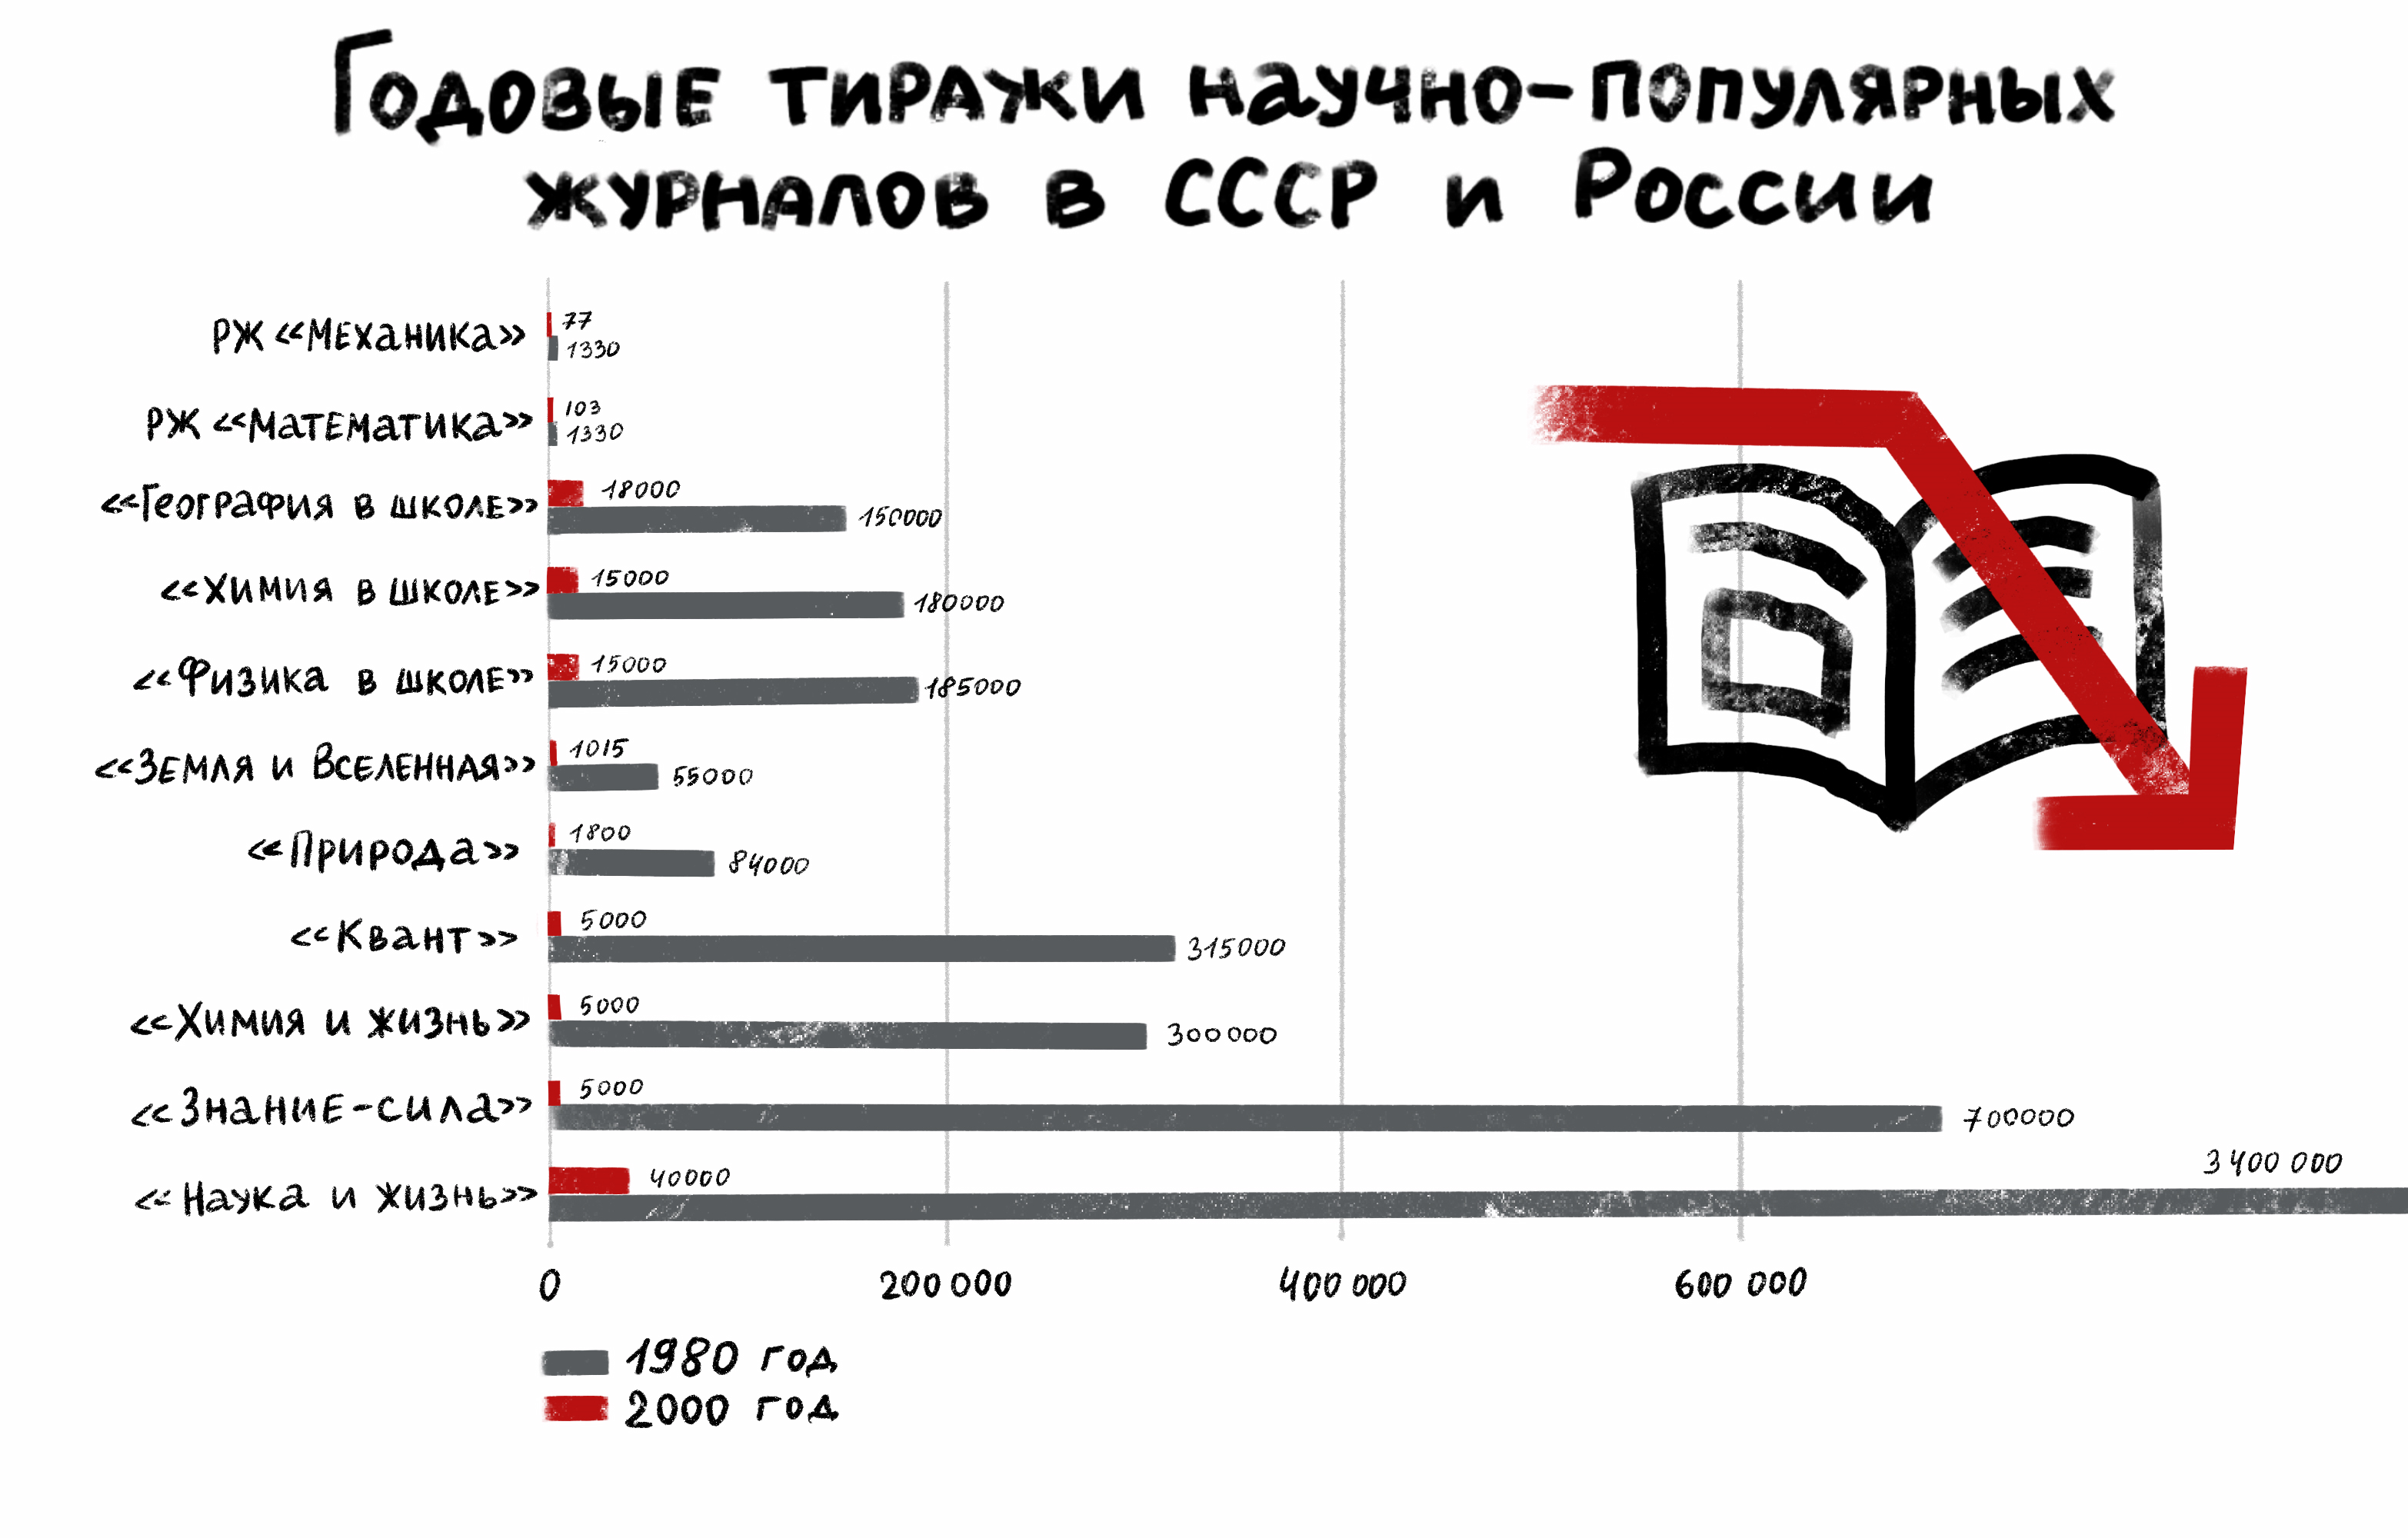 Тиражи научно-популярных журналов в СССР и в России